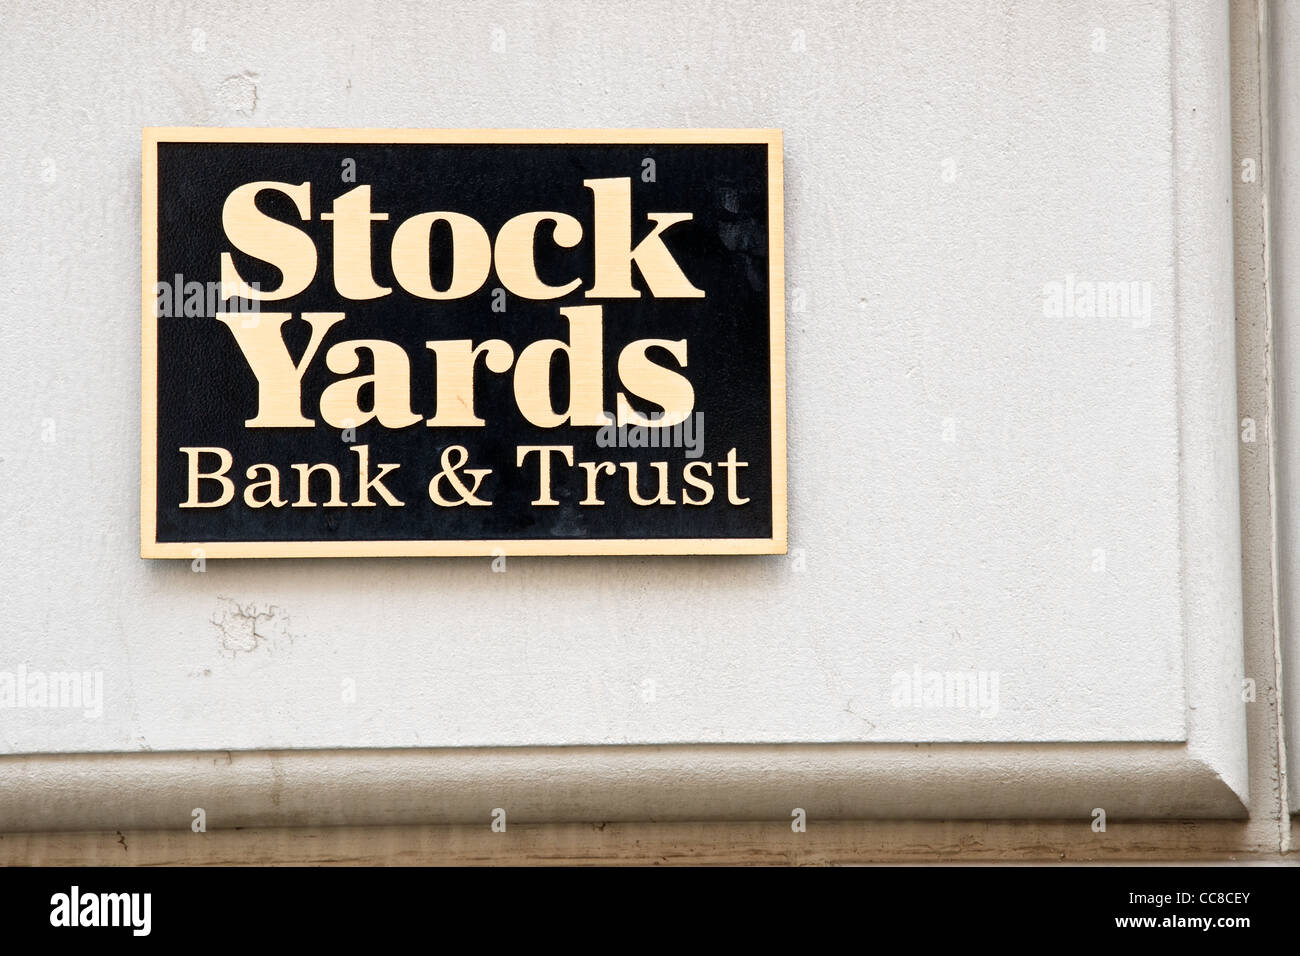 Segno quadrato sulla parete di uno Stock Yards Bank & Trust Building a Cincinnati, Ohio Foto Stock